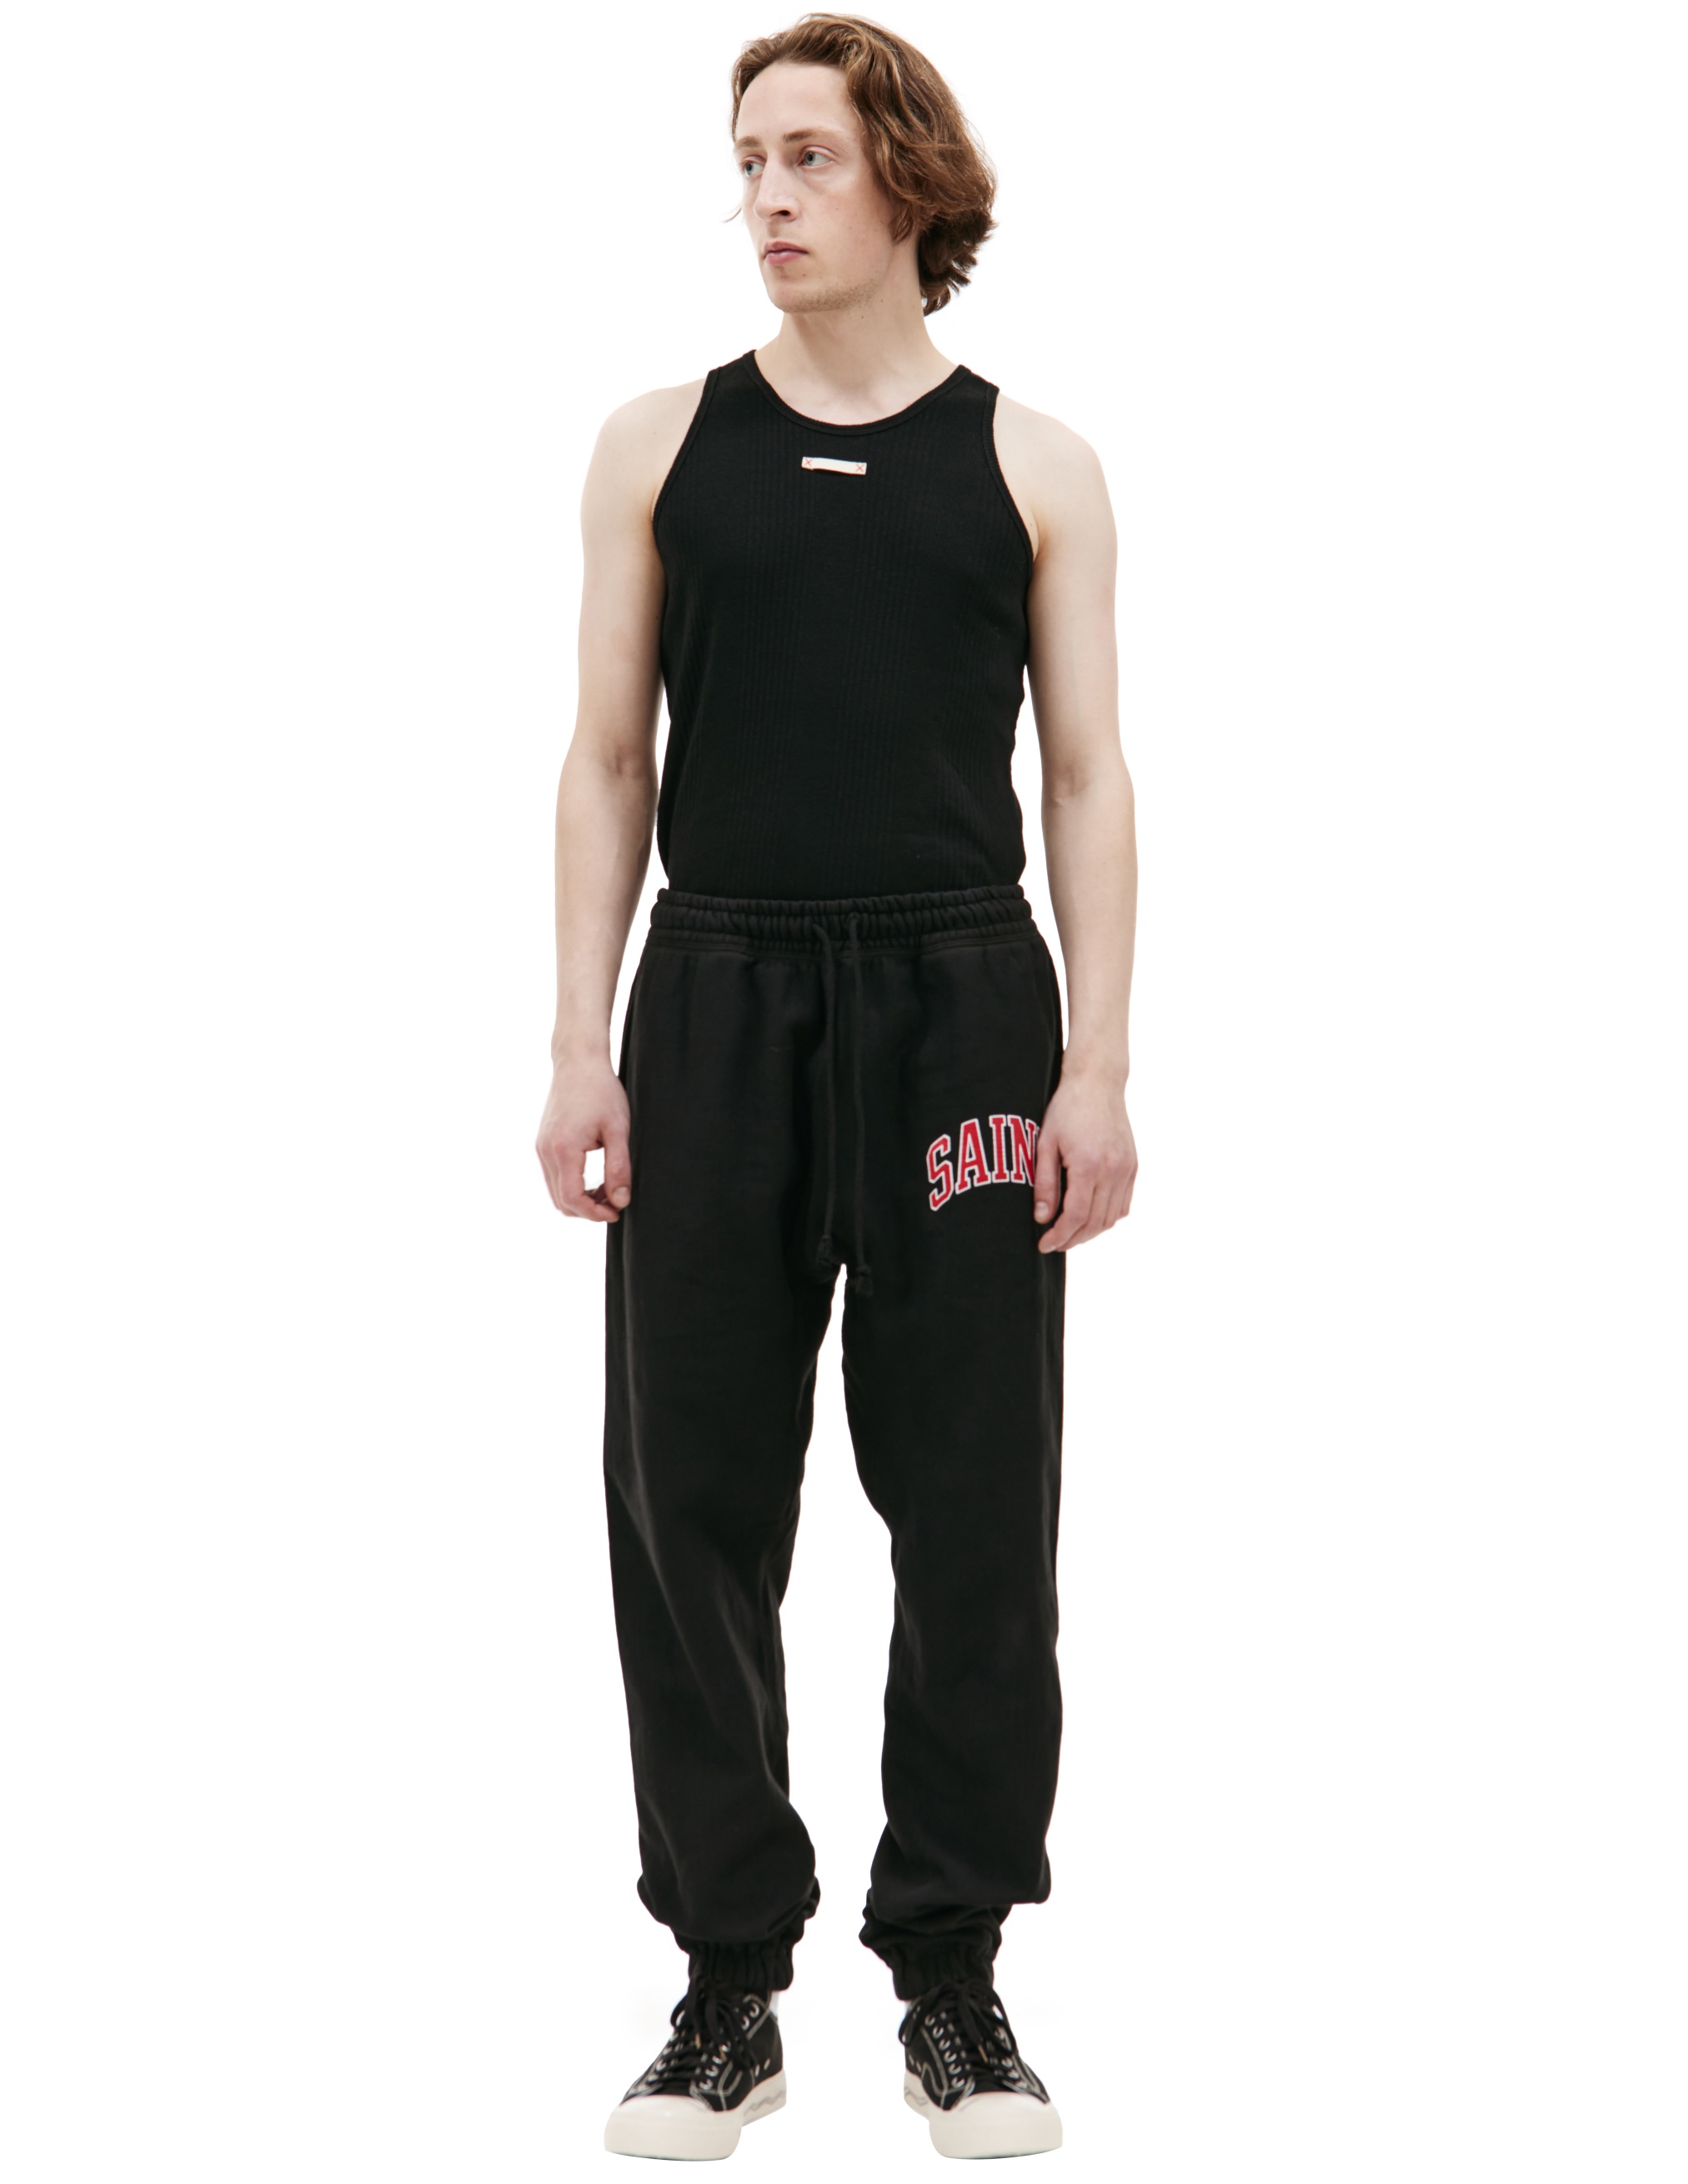 Спортивные брюки с логотипом Saint Michael SM-A23-0000-036, размер M;L;XL